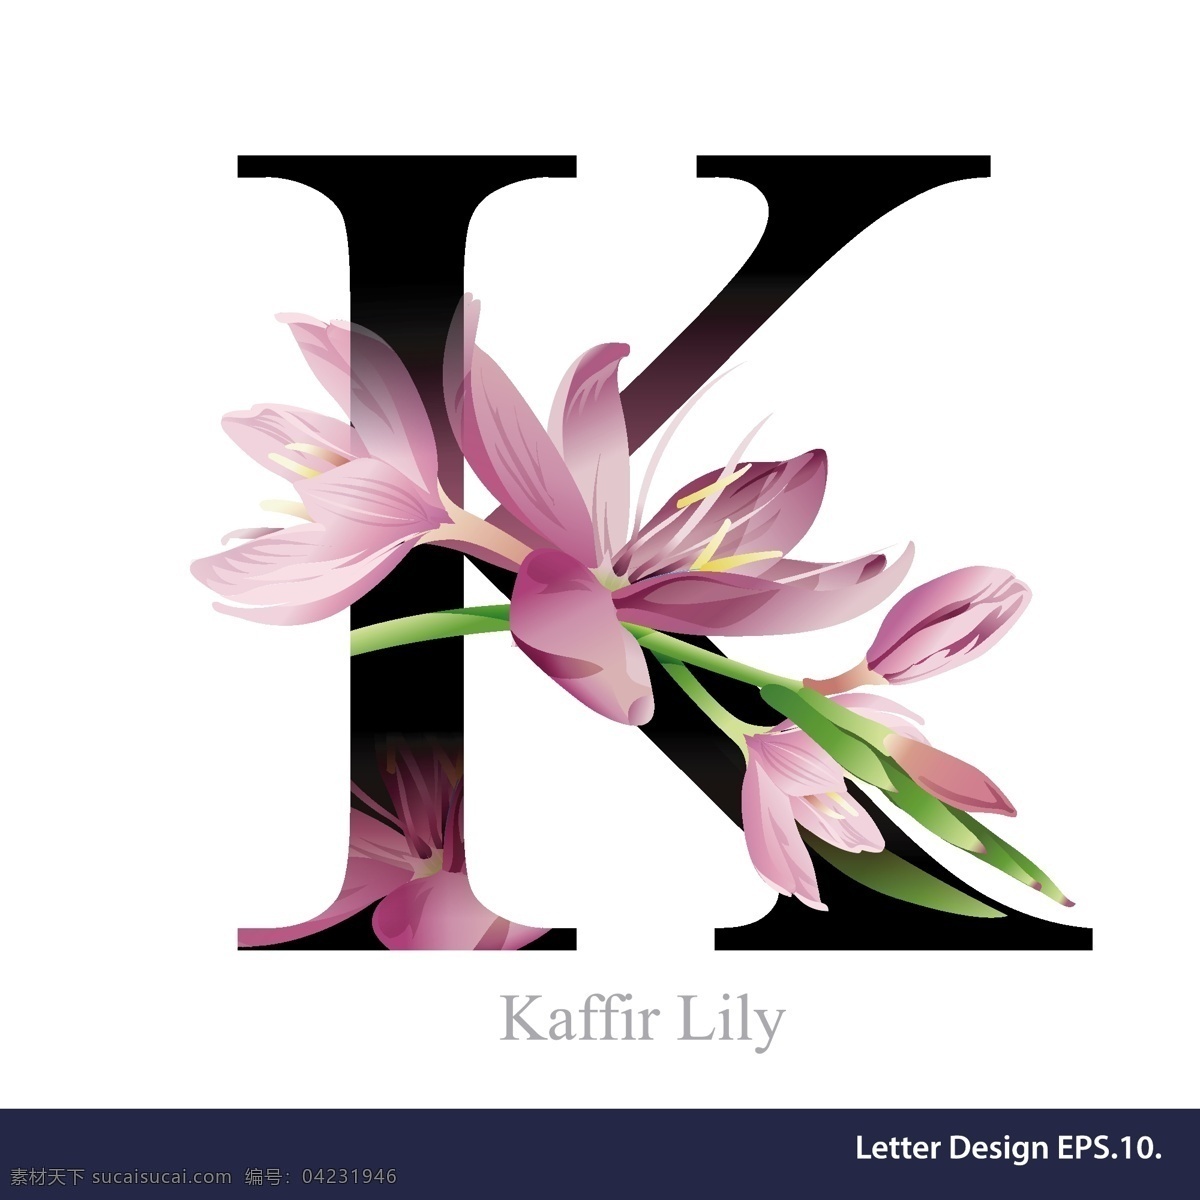 紫色 热带 花卉 英文 字母 字体 玉兰 植物 矢量 源文件